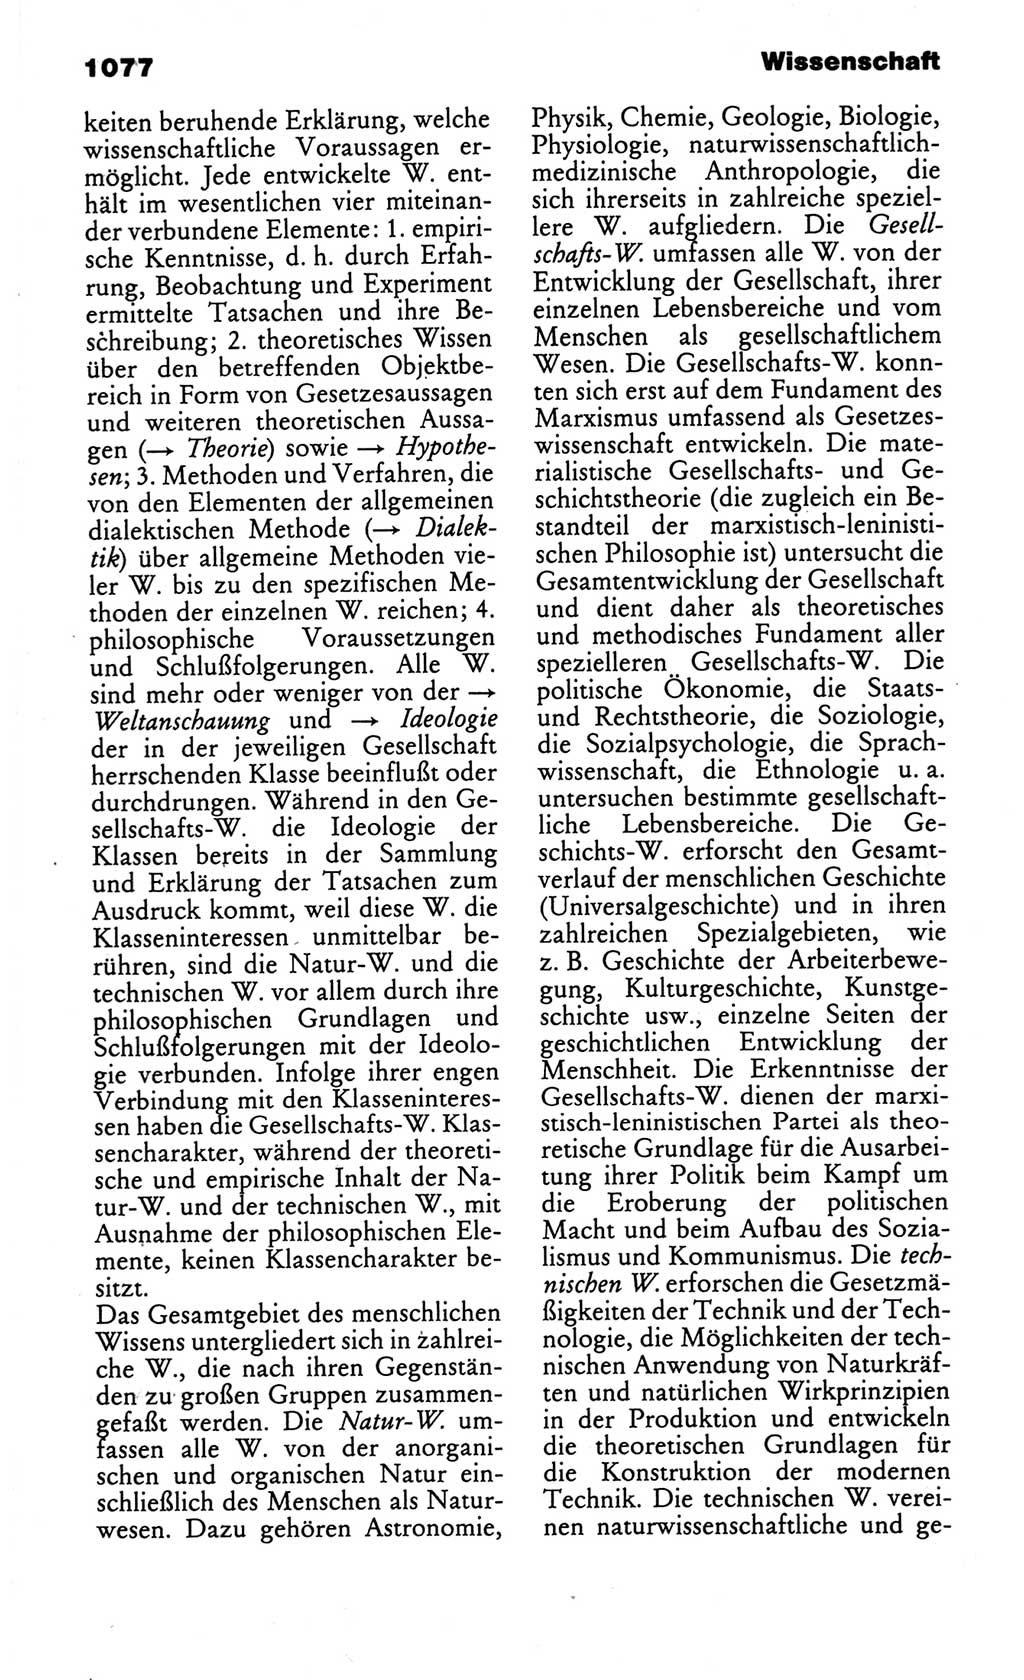 Kleines politisches Wörterbuch [Deutsche Demokratische Republik (DDR)] 1986, Seite 1077 (Kl. pol. Wb. DDR 1986, S. 1077)